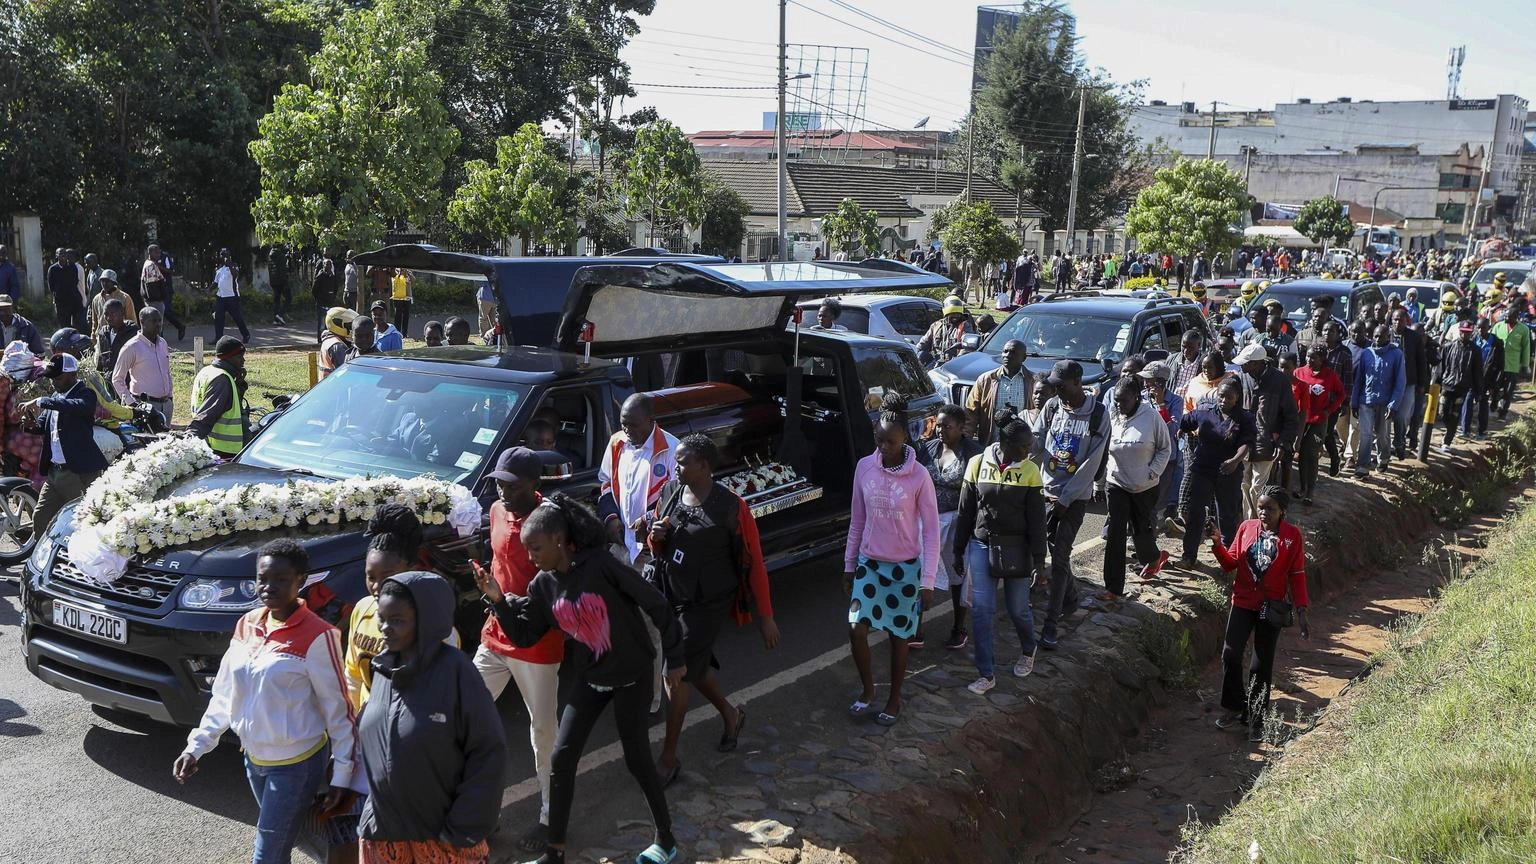 Atletica: funerali di stato per Kiptum in Kenya, presente Coe